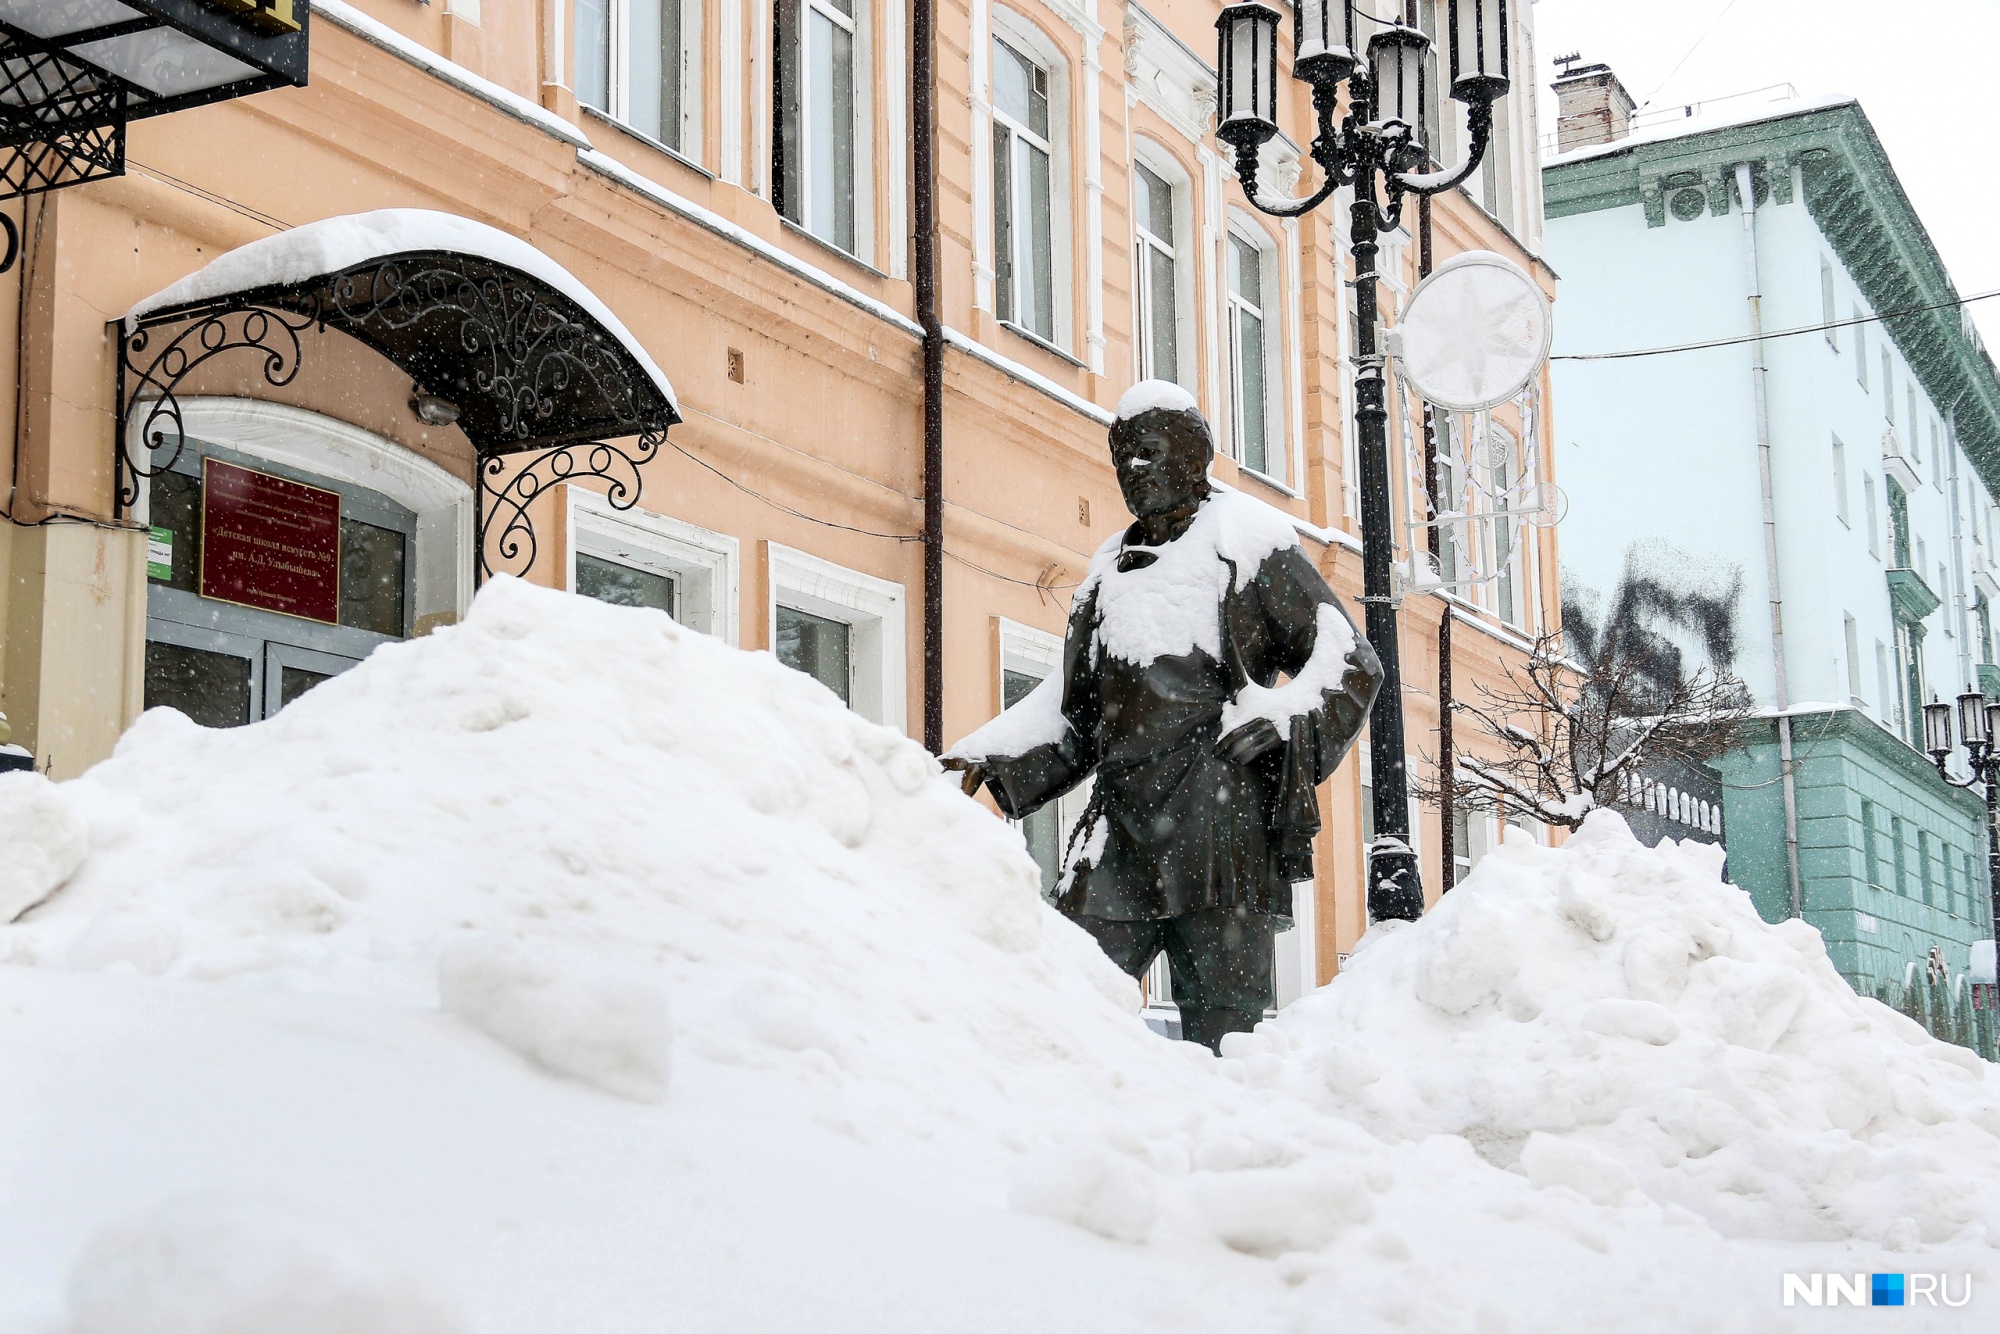 Памятники укрылись снегом, словно шубами